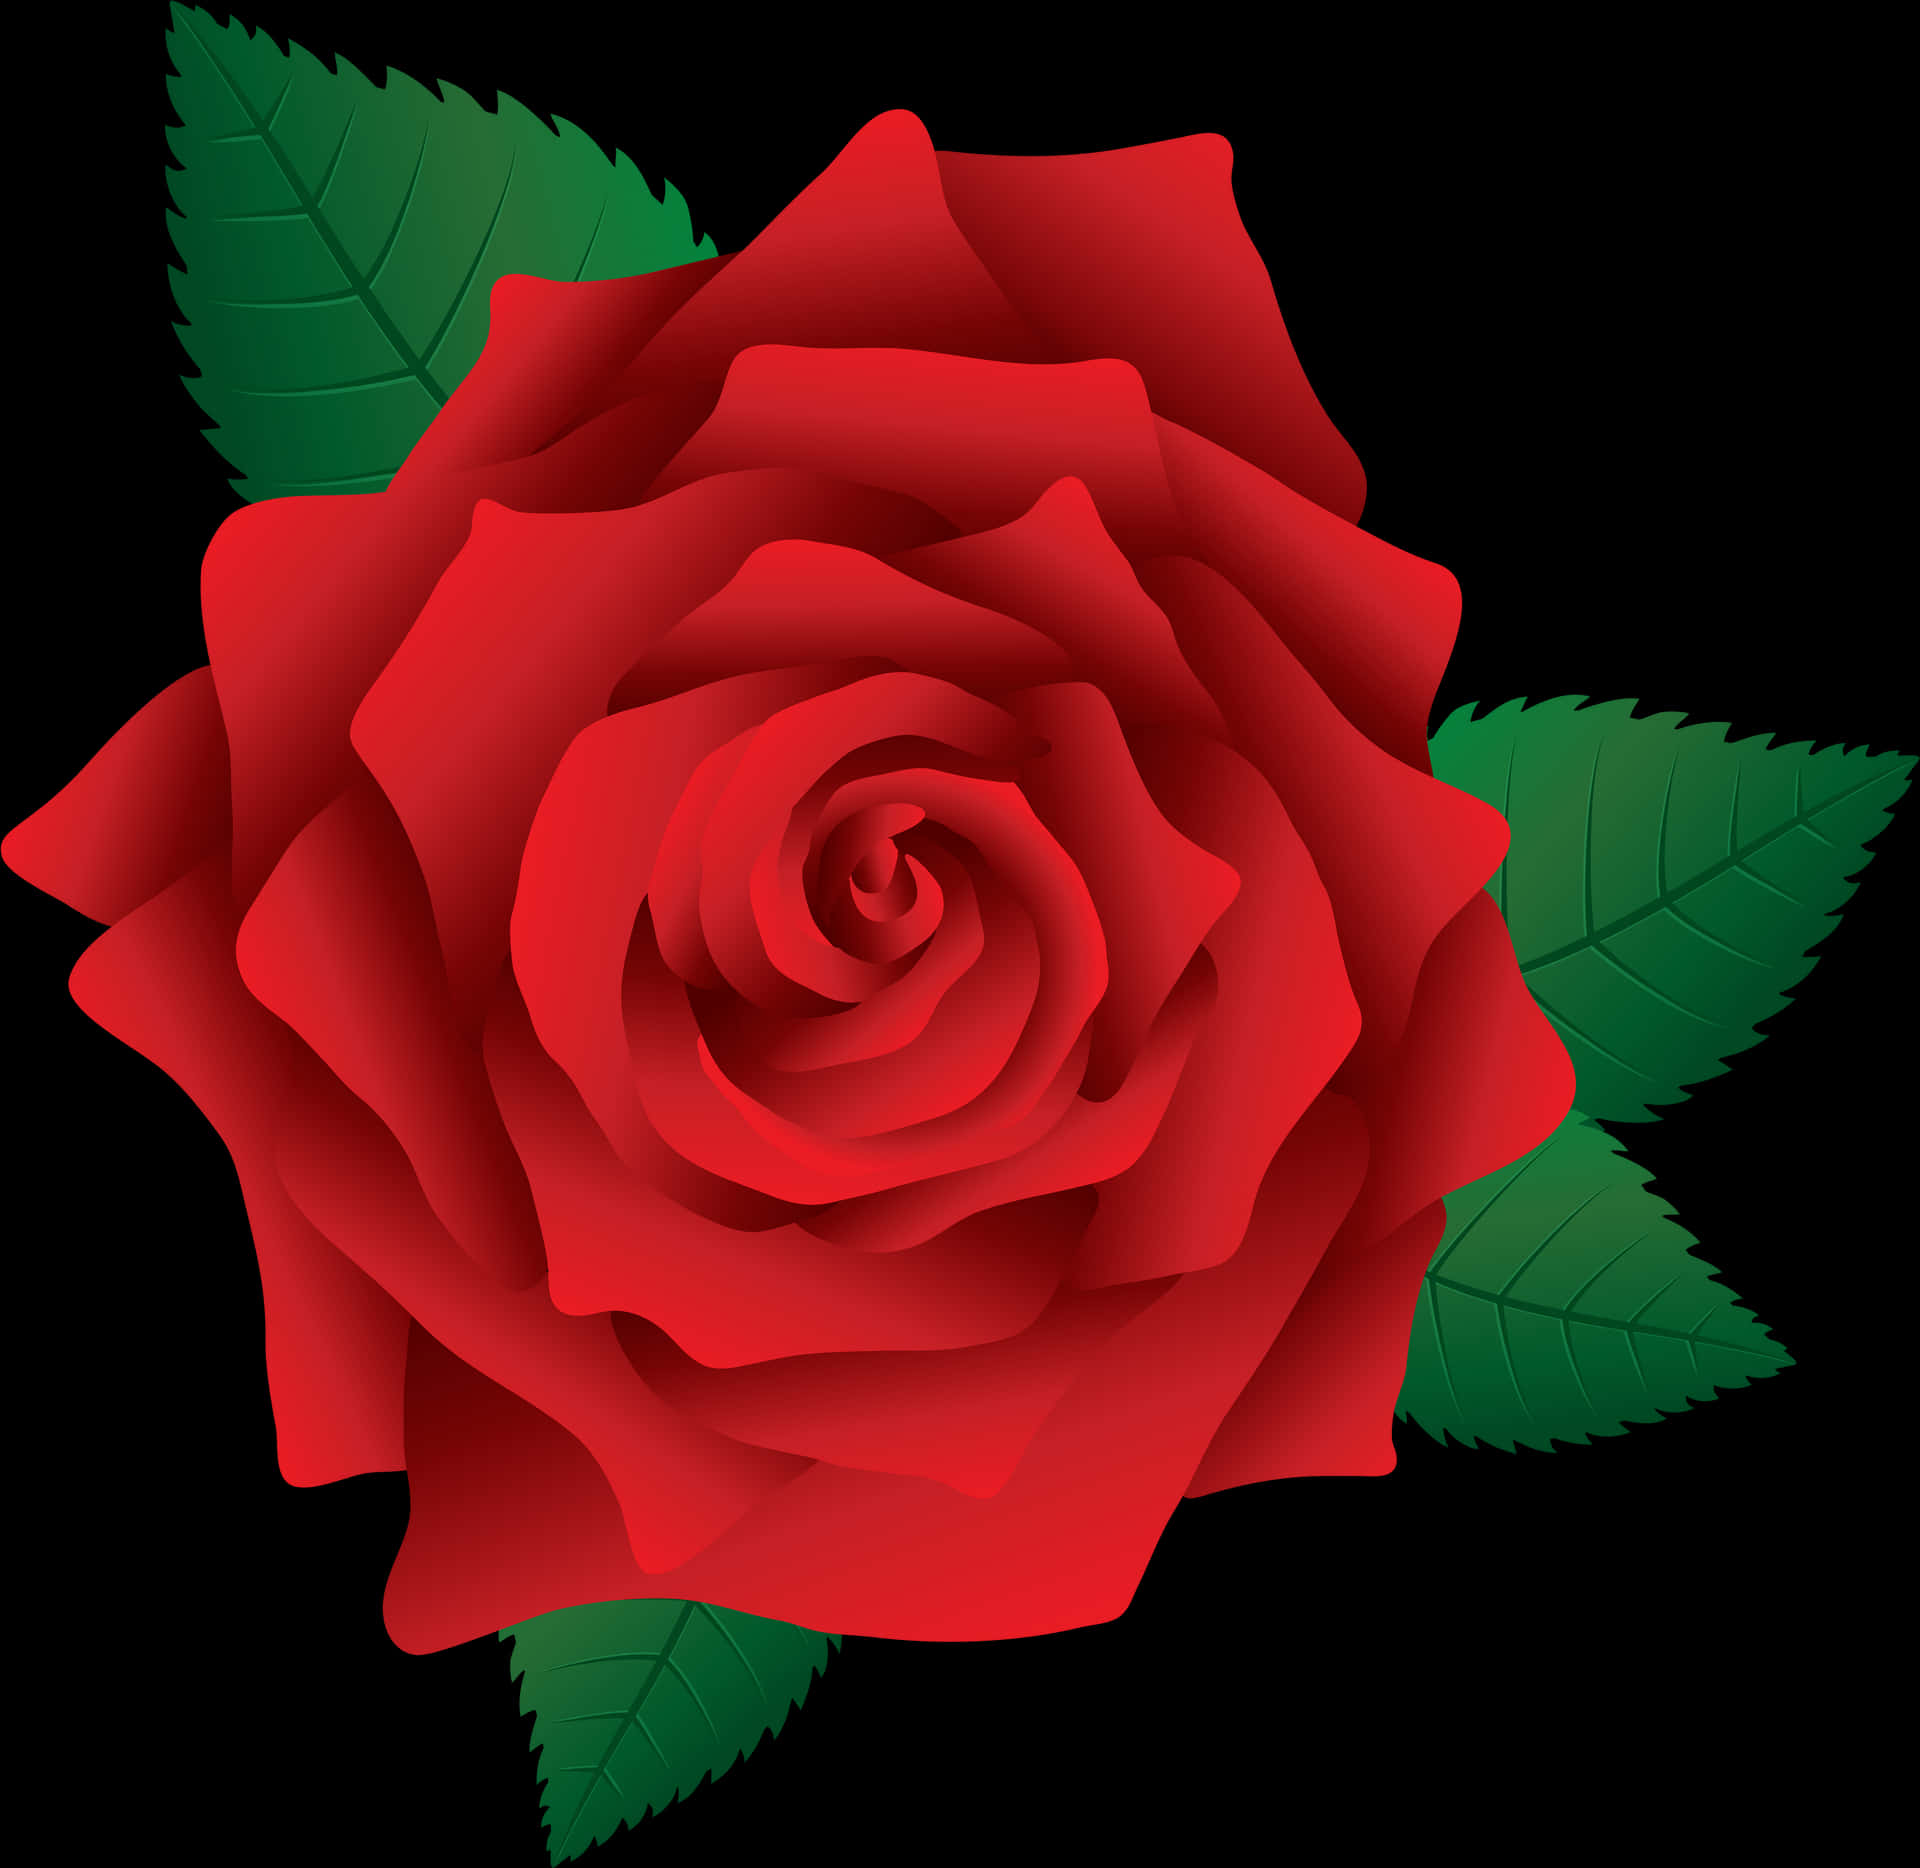 Red Rose Vector Illustration PNG image